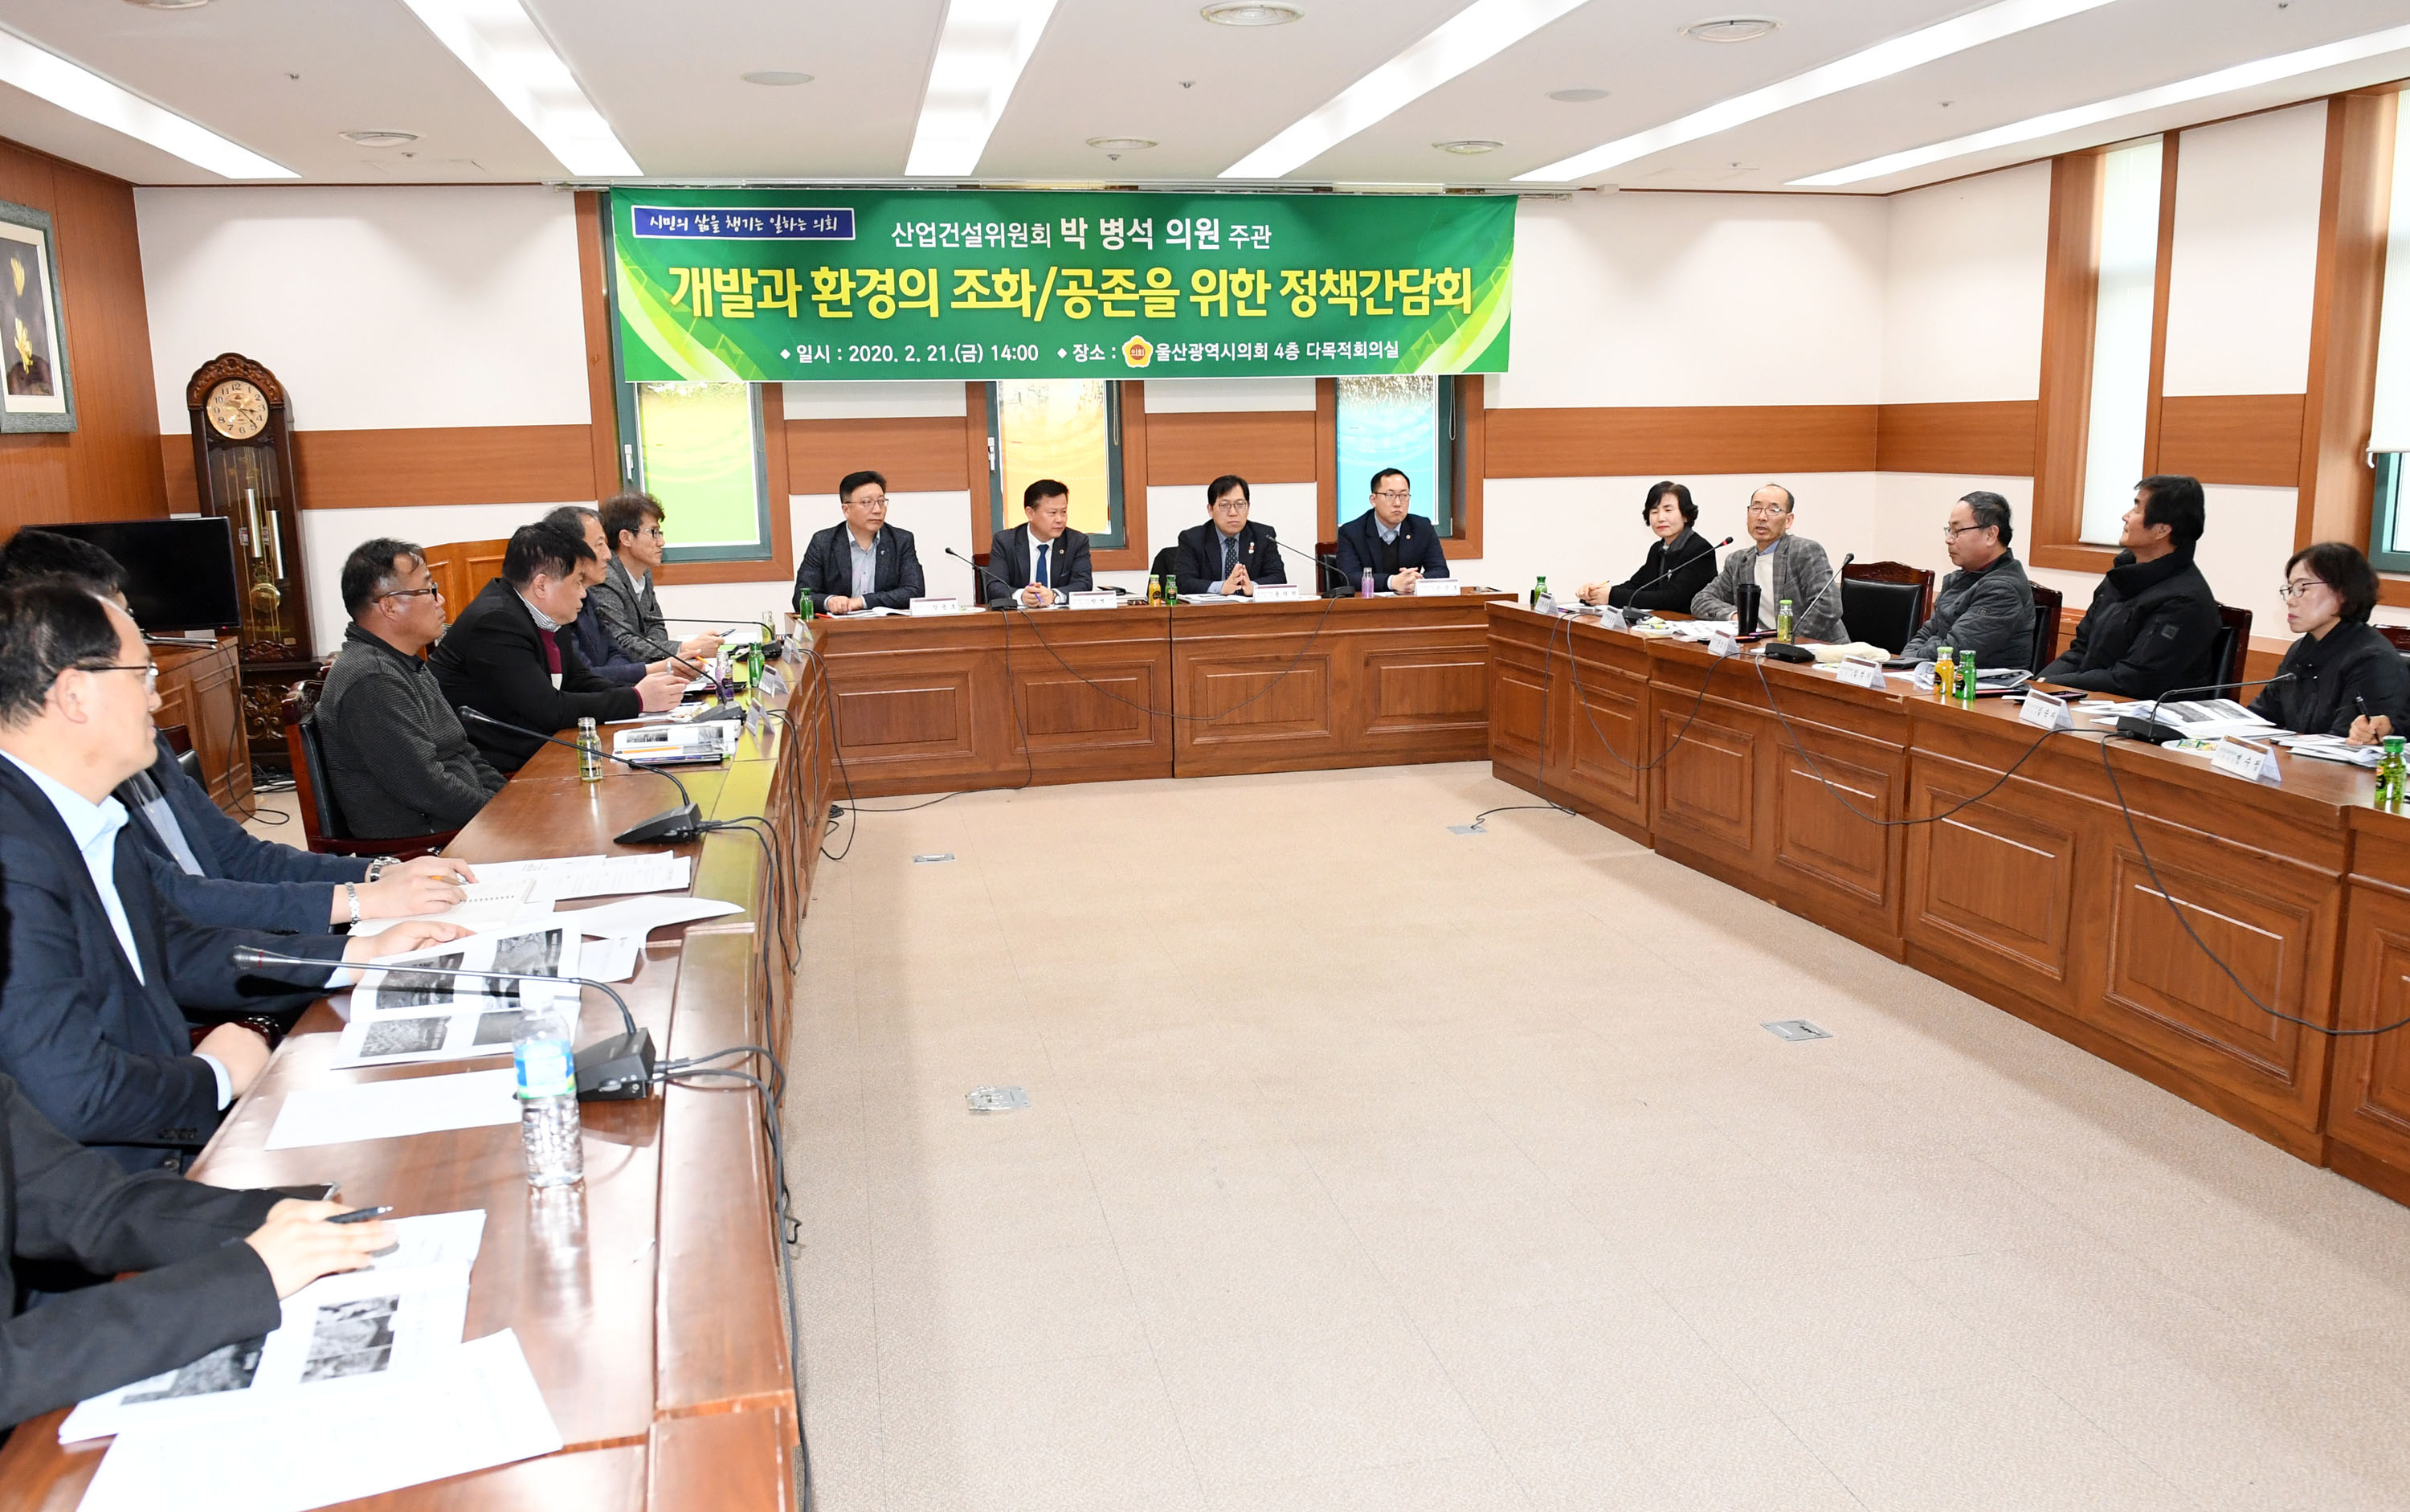 박병석 의원 개발과 환경의 조화/공존을 위한 정책간담회 개최5